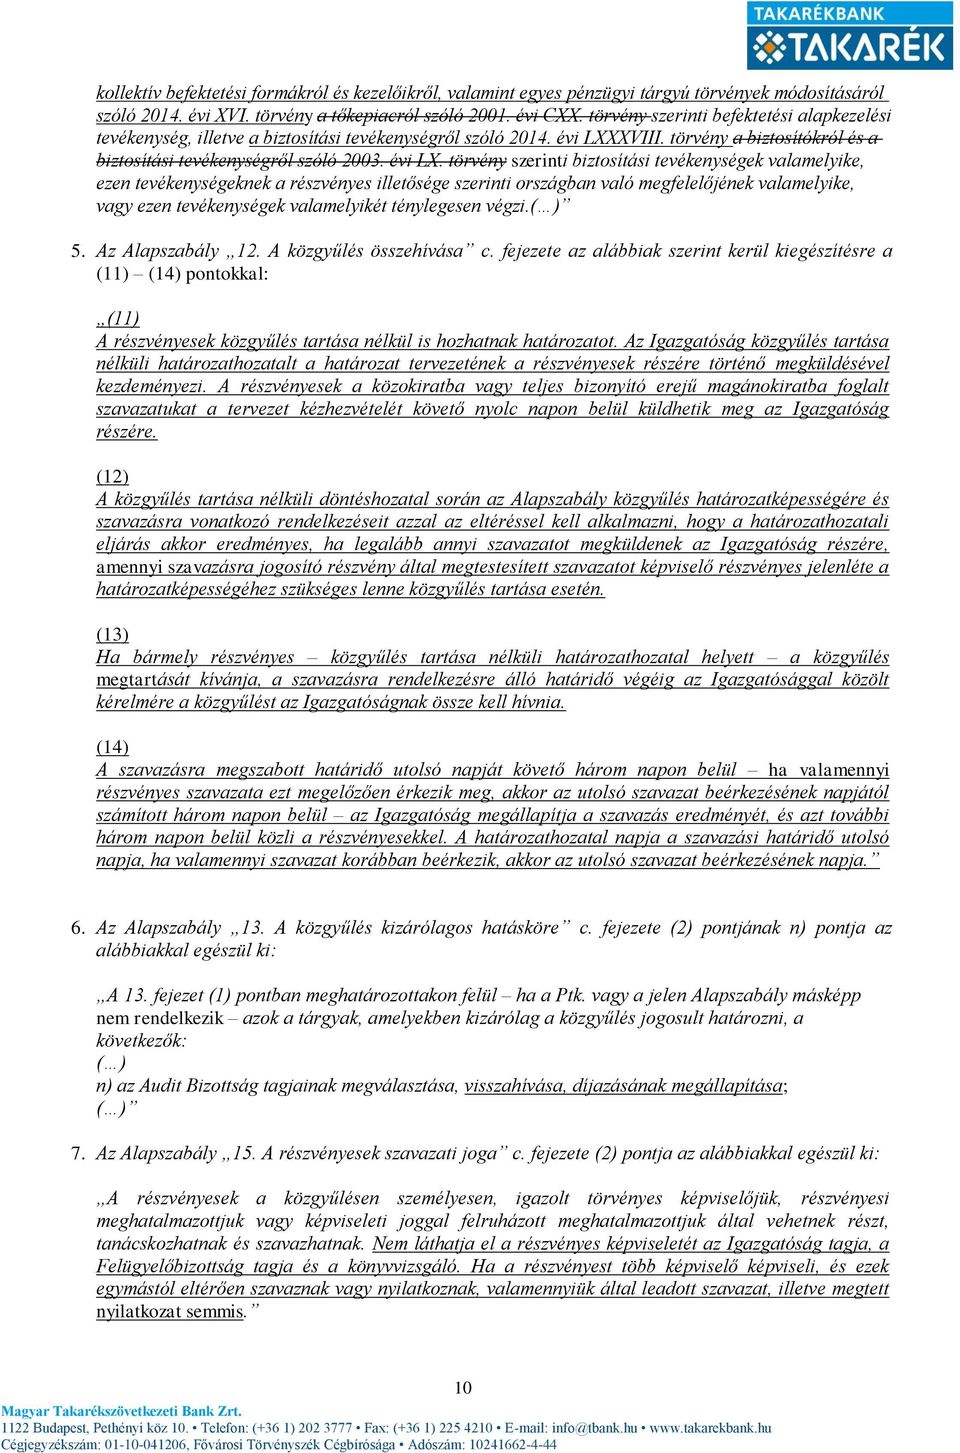 XVIII. törvény a biztosítókról és a biztosítási tevékenységről szóló 2003. évi LX.